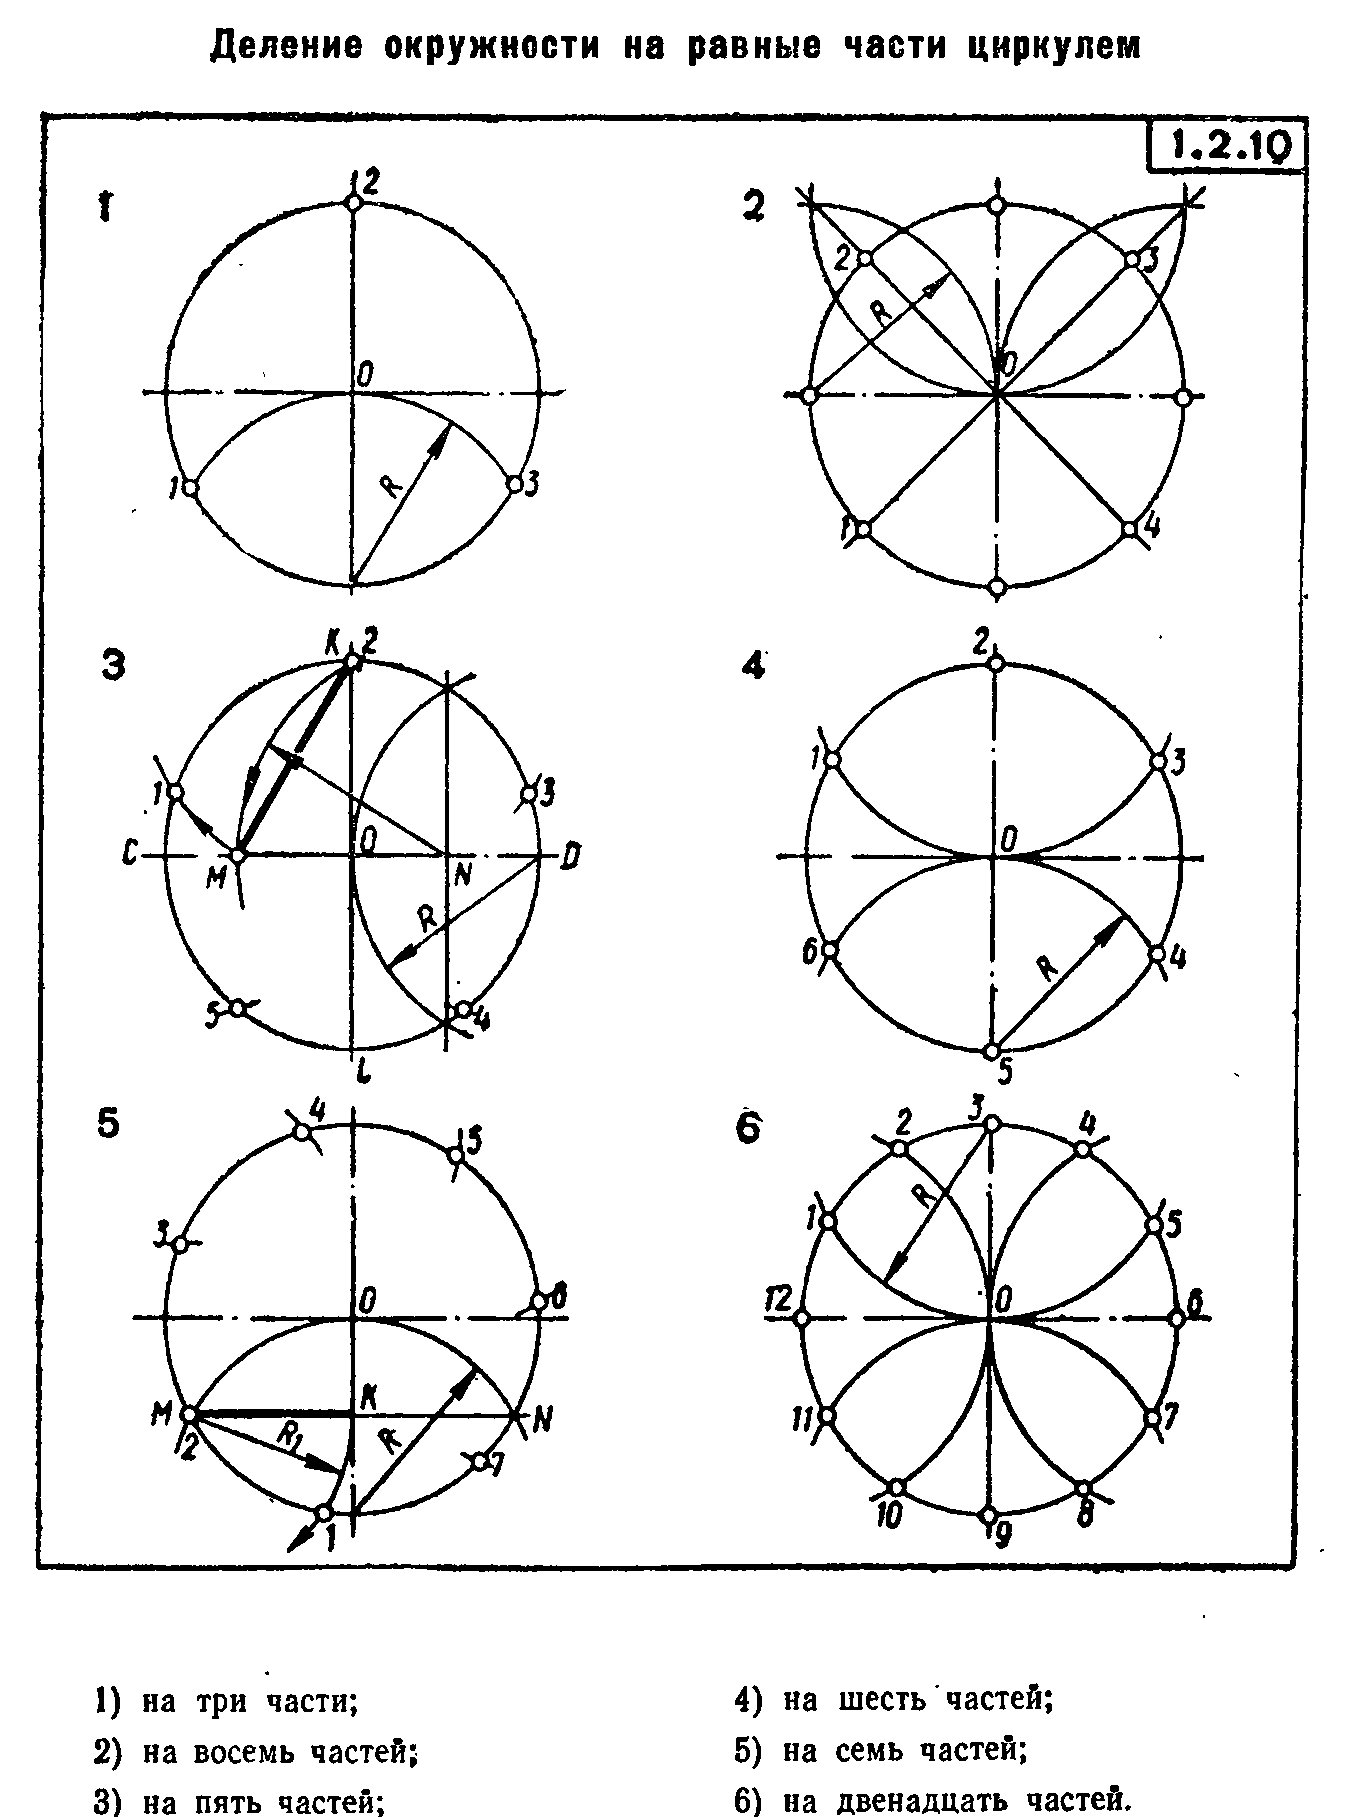 Как с помощью циркуля разделить окружность на 3. Как поделить окружность на 3 части с помощью циркуля. Разделить окружность на 8 равных частей циркулем. Деление круга на равные части с помощью циркуля. Делить круг на 6